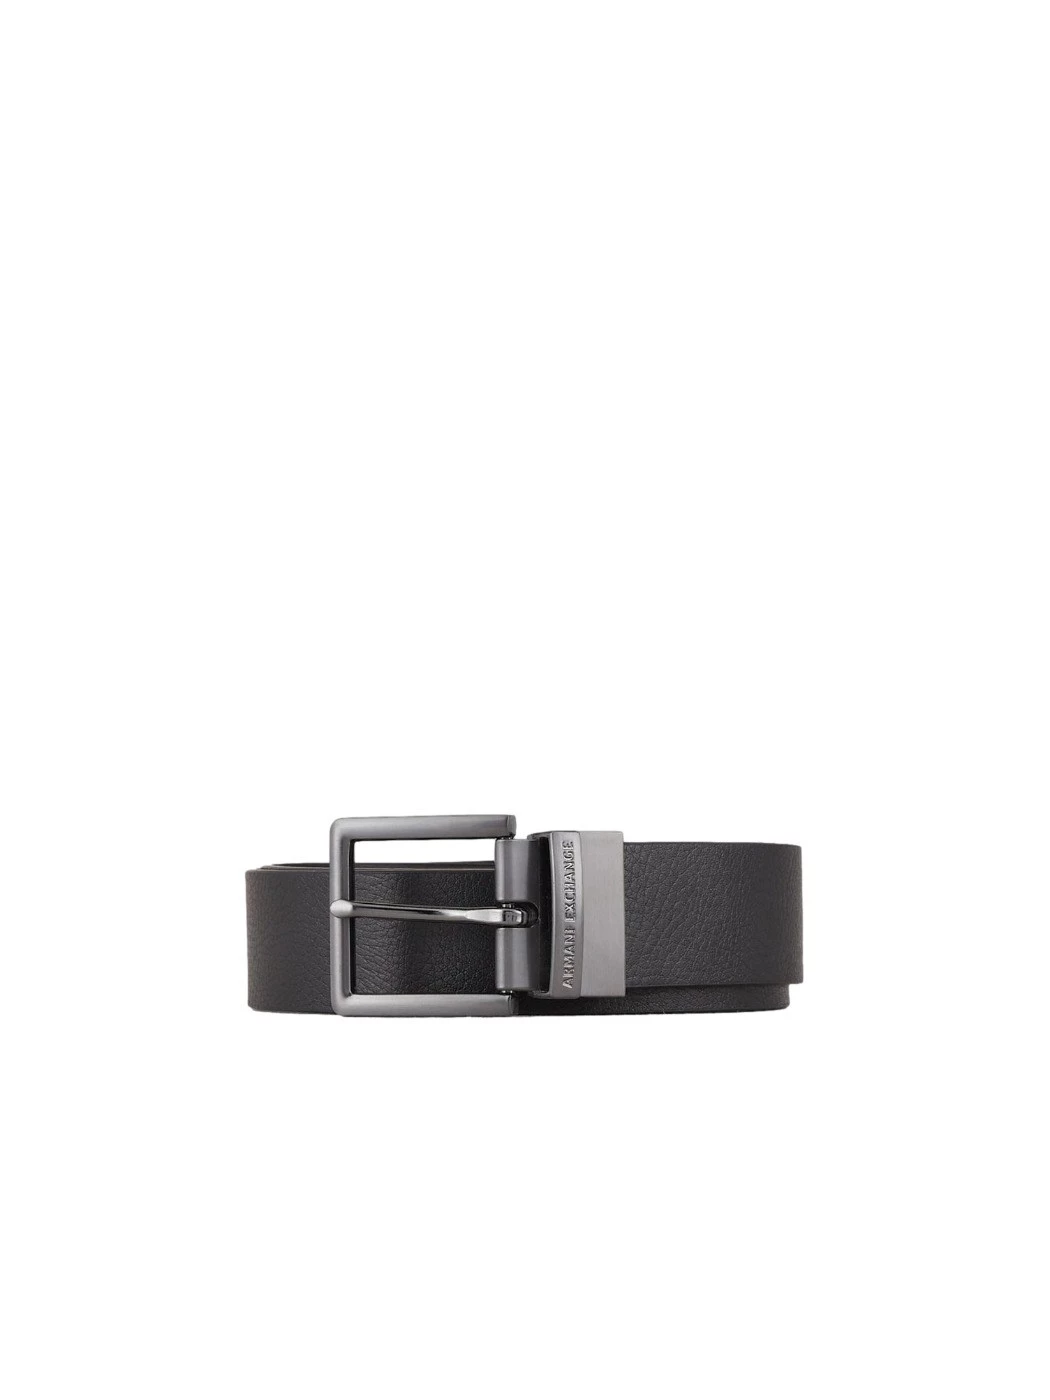 Leather belt with Armani Exchange metal buckle